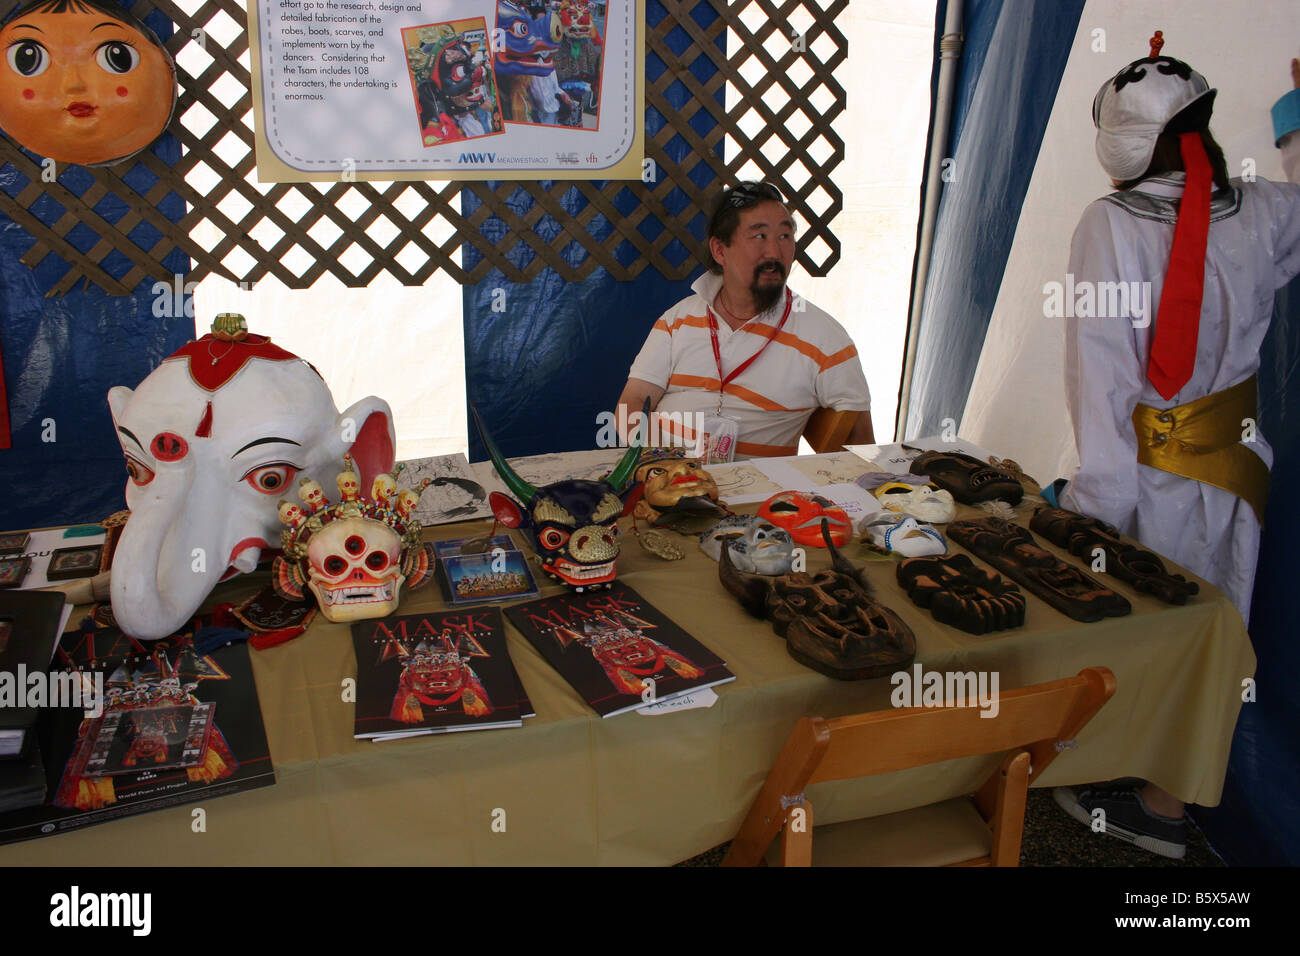 Les artisans de la société GooErtunts mongole la vente de peintures à l'encre sur du papier de riz et les masques de Mongolie au folk festival. Banque D'Images